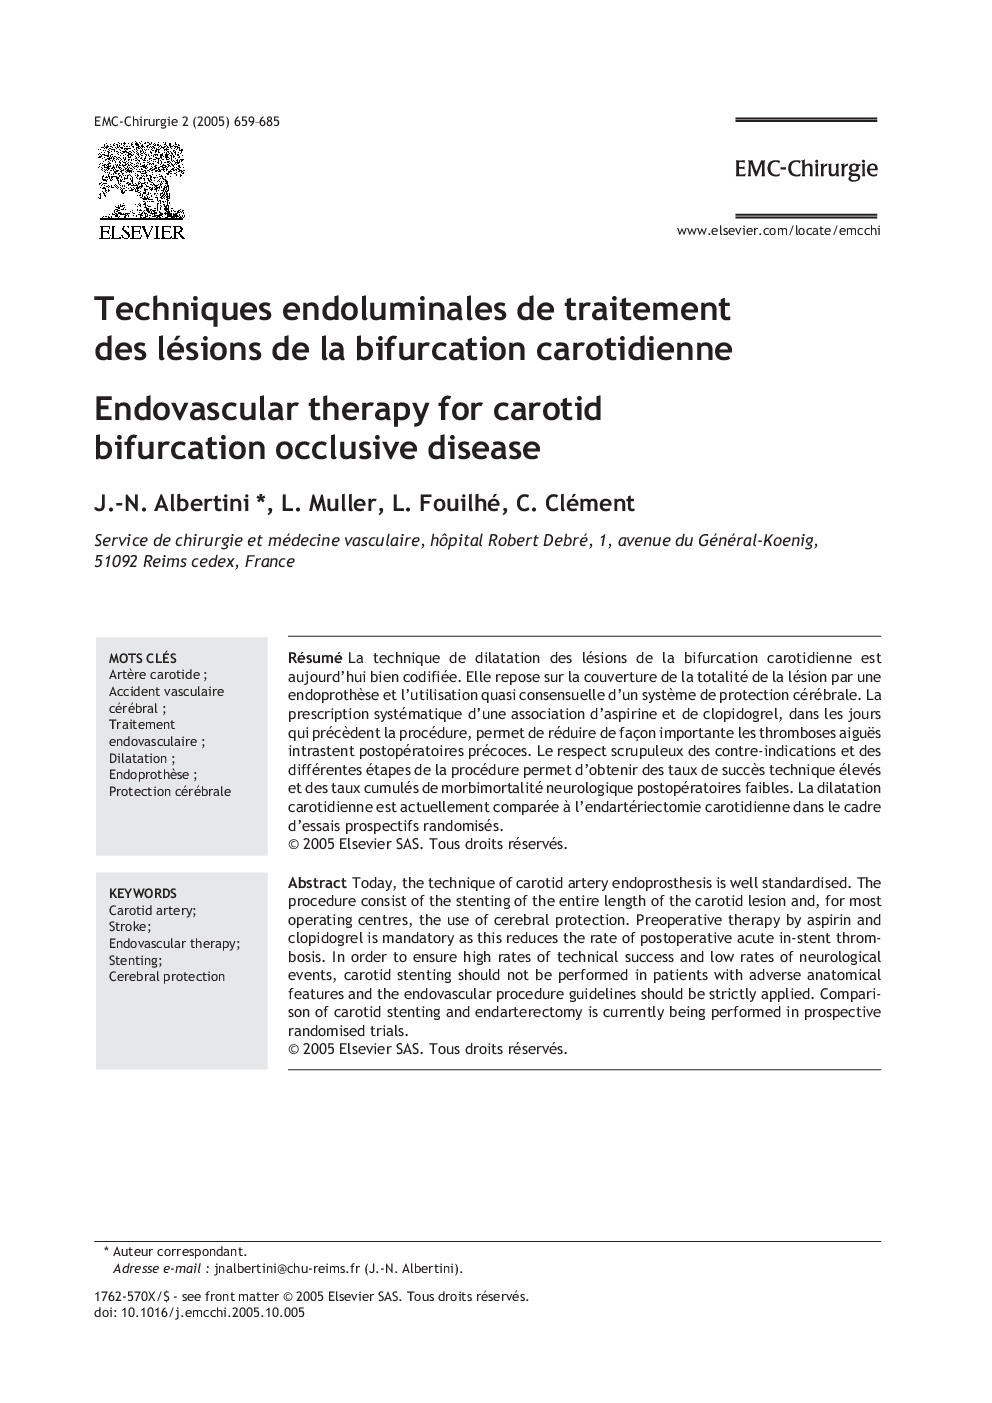 Techniques endoluminales de traitement des lésions de la bifurcation carotidienne